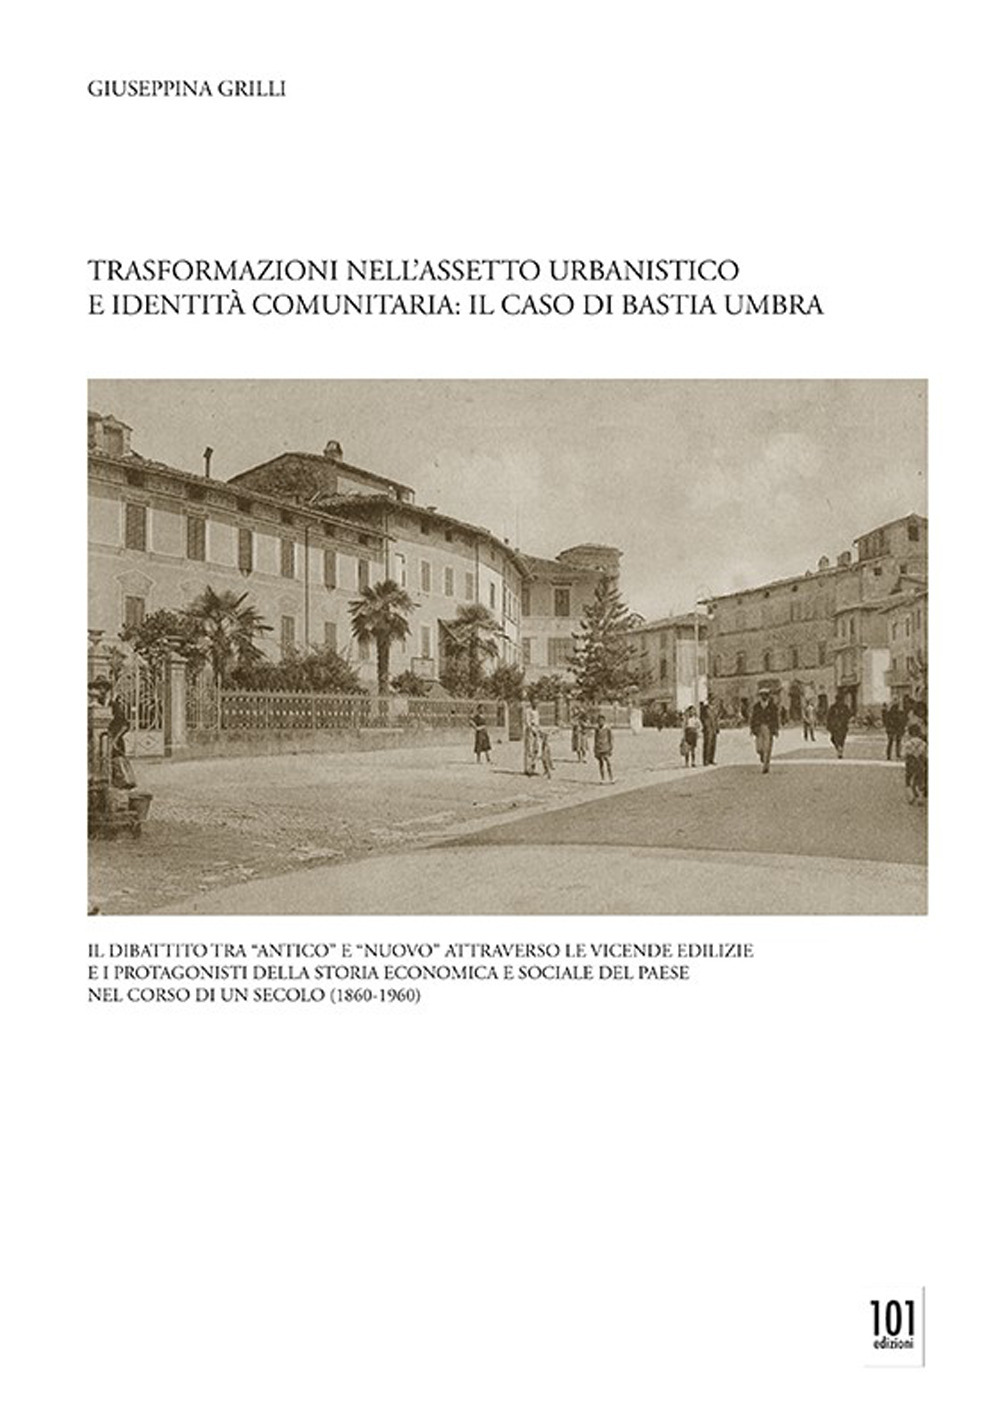 Trasformazioni nell'assetto urbanistico e identità comunitaria: il caso di Bastia Umbra